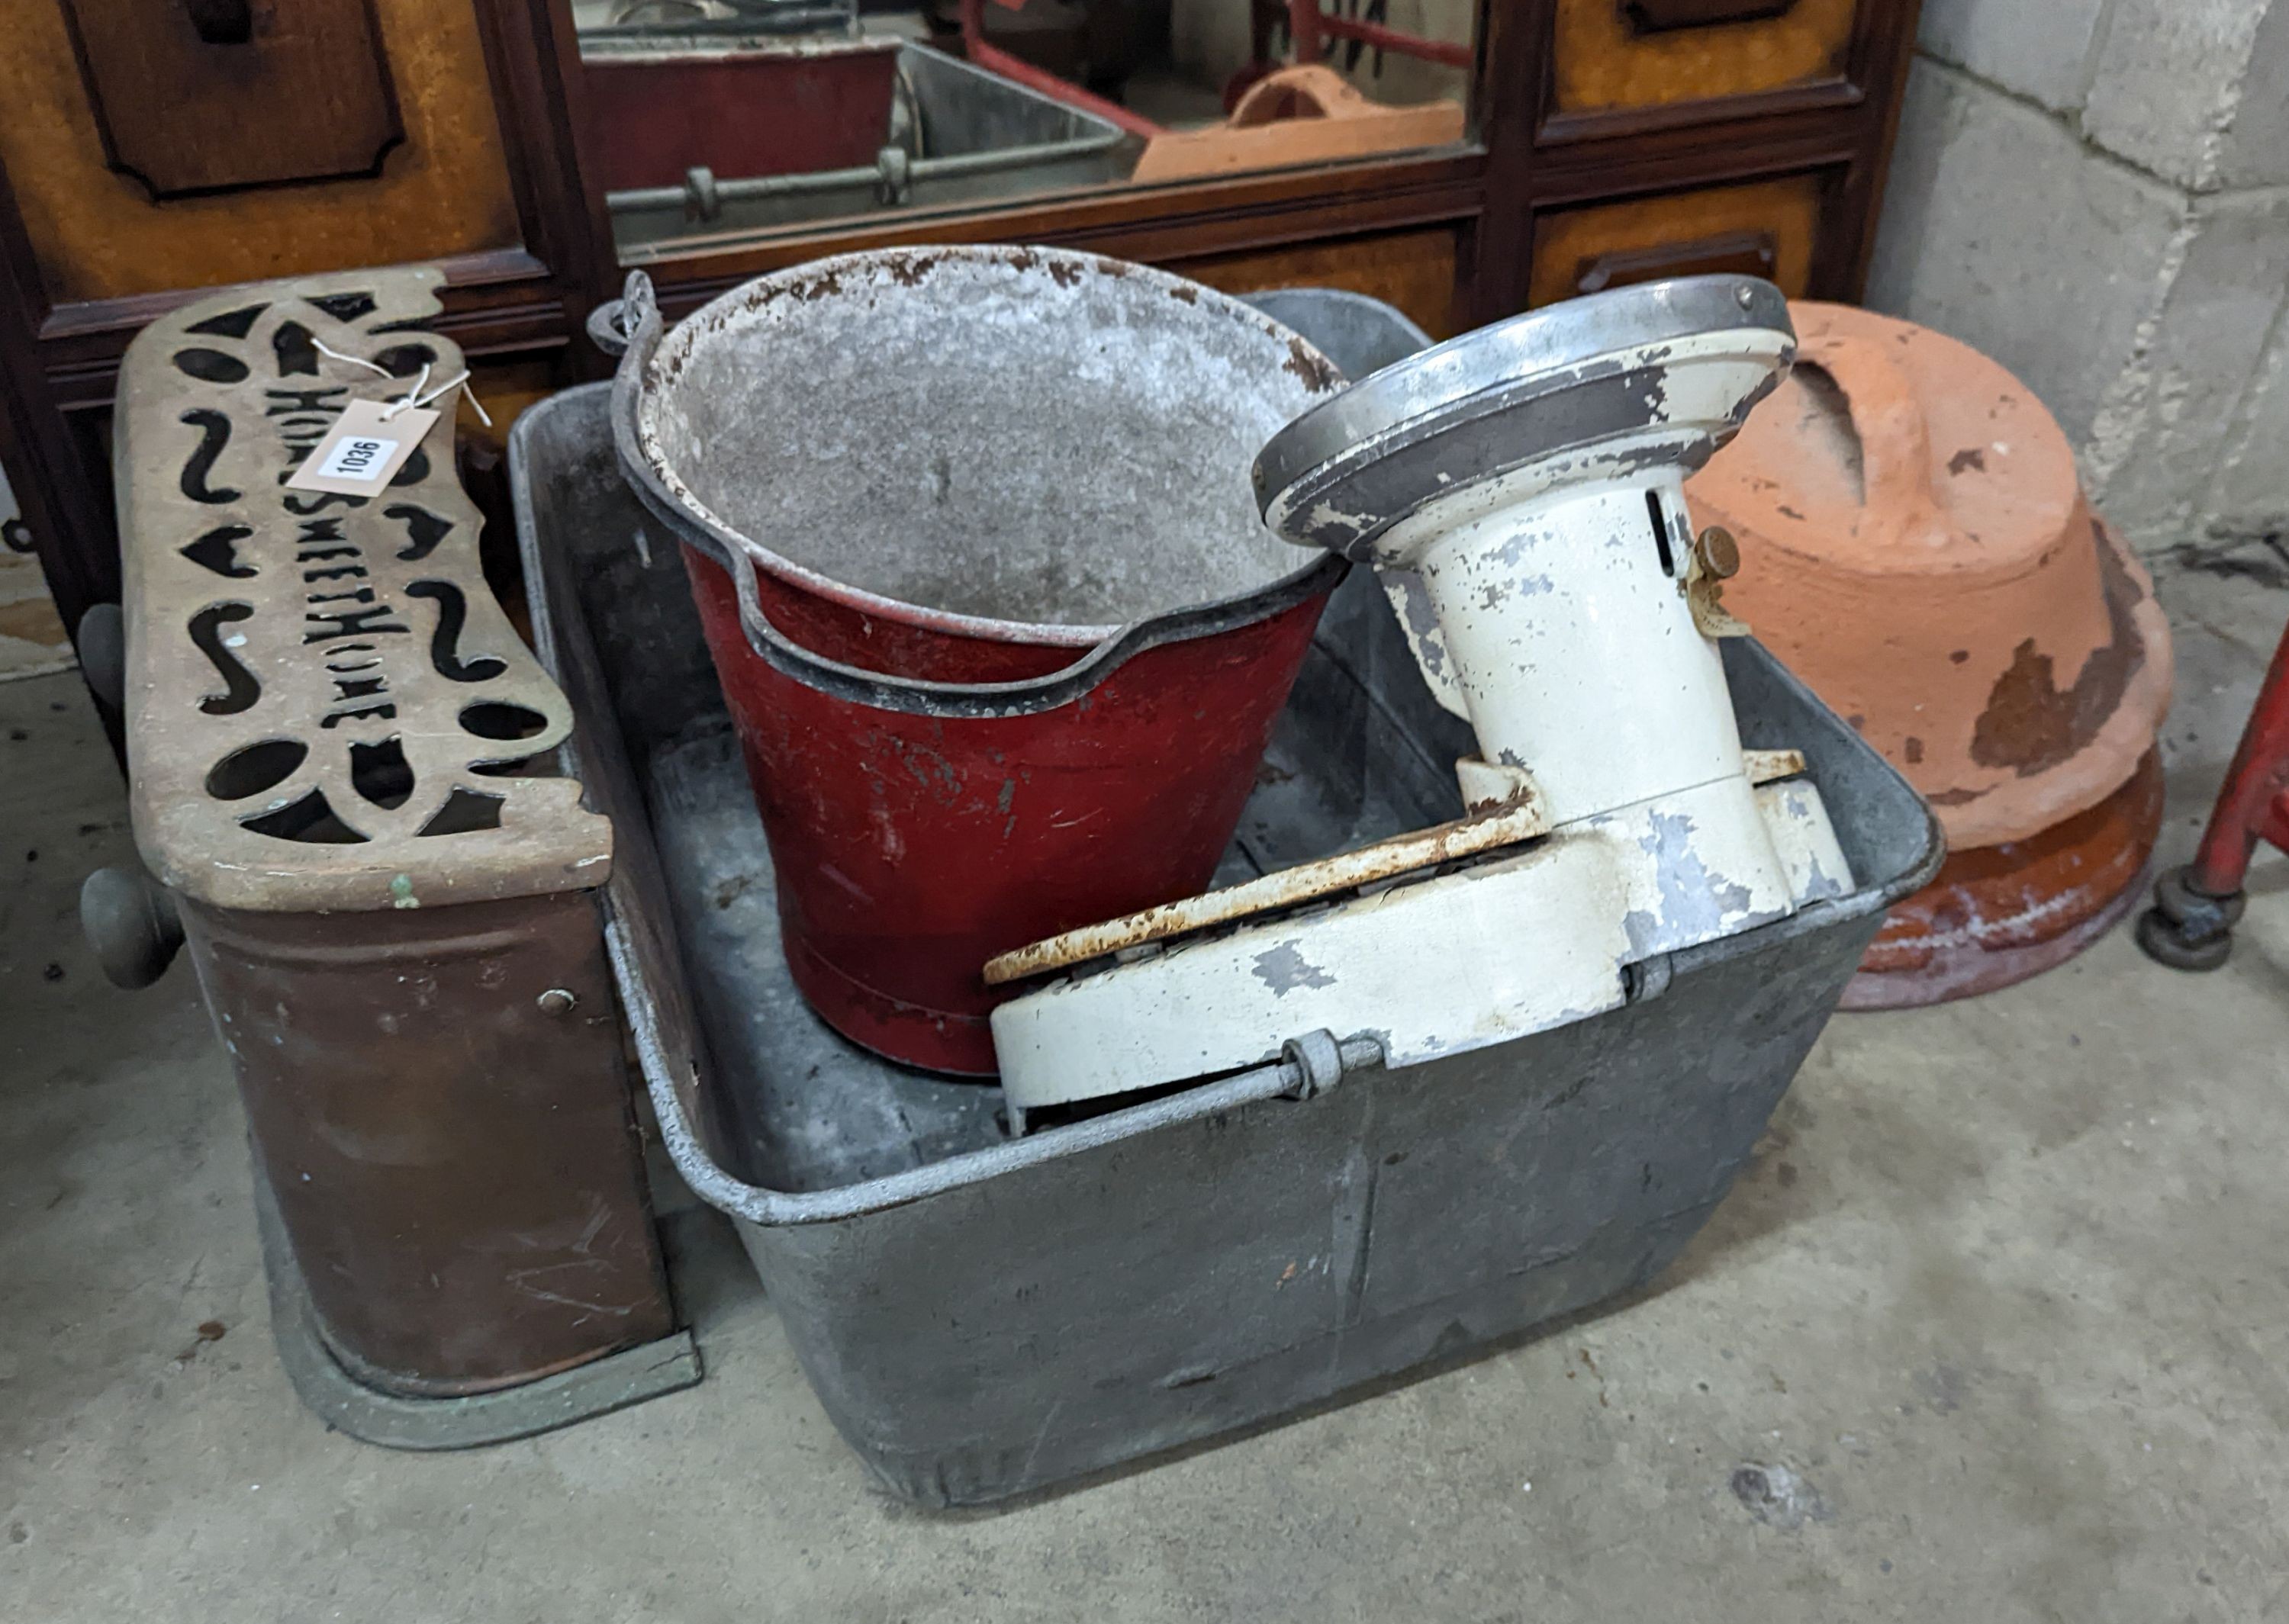 A rectangular galvanised tub, scales bucket, fender, etc.